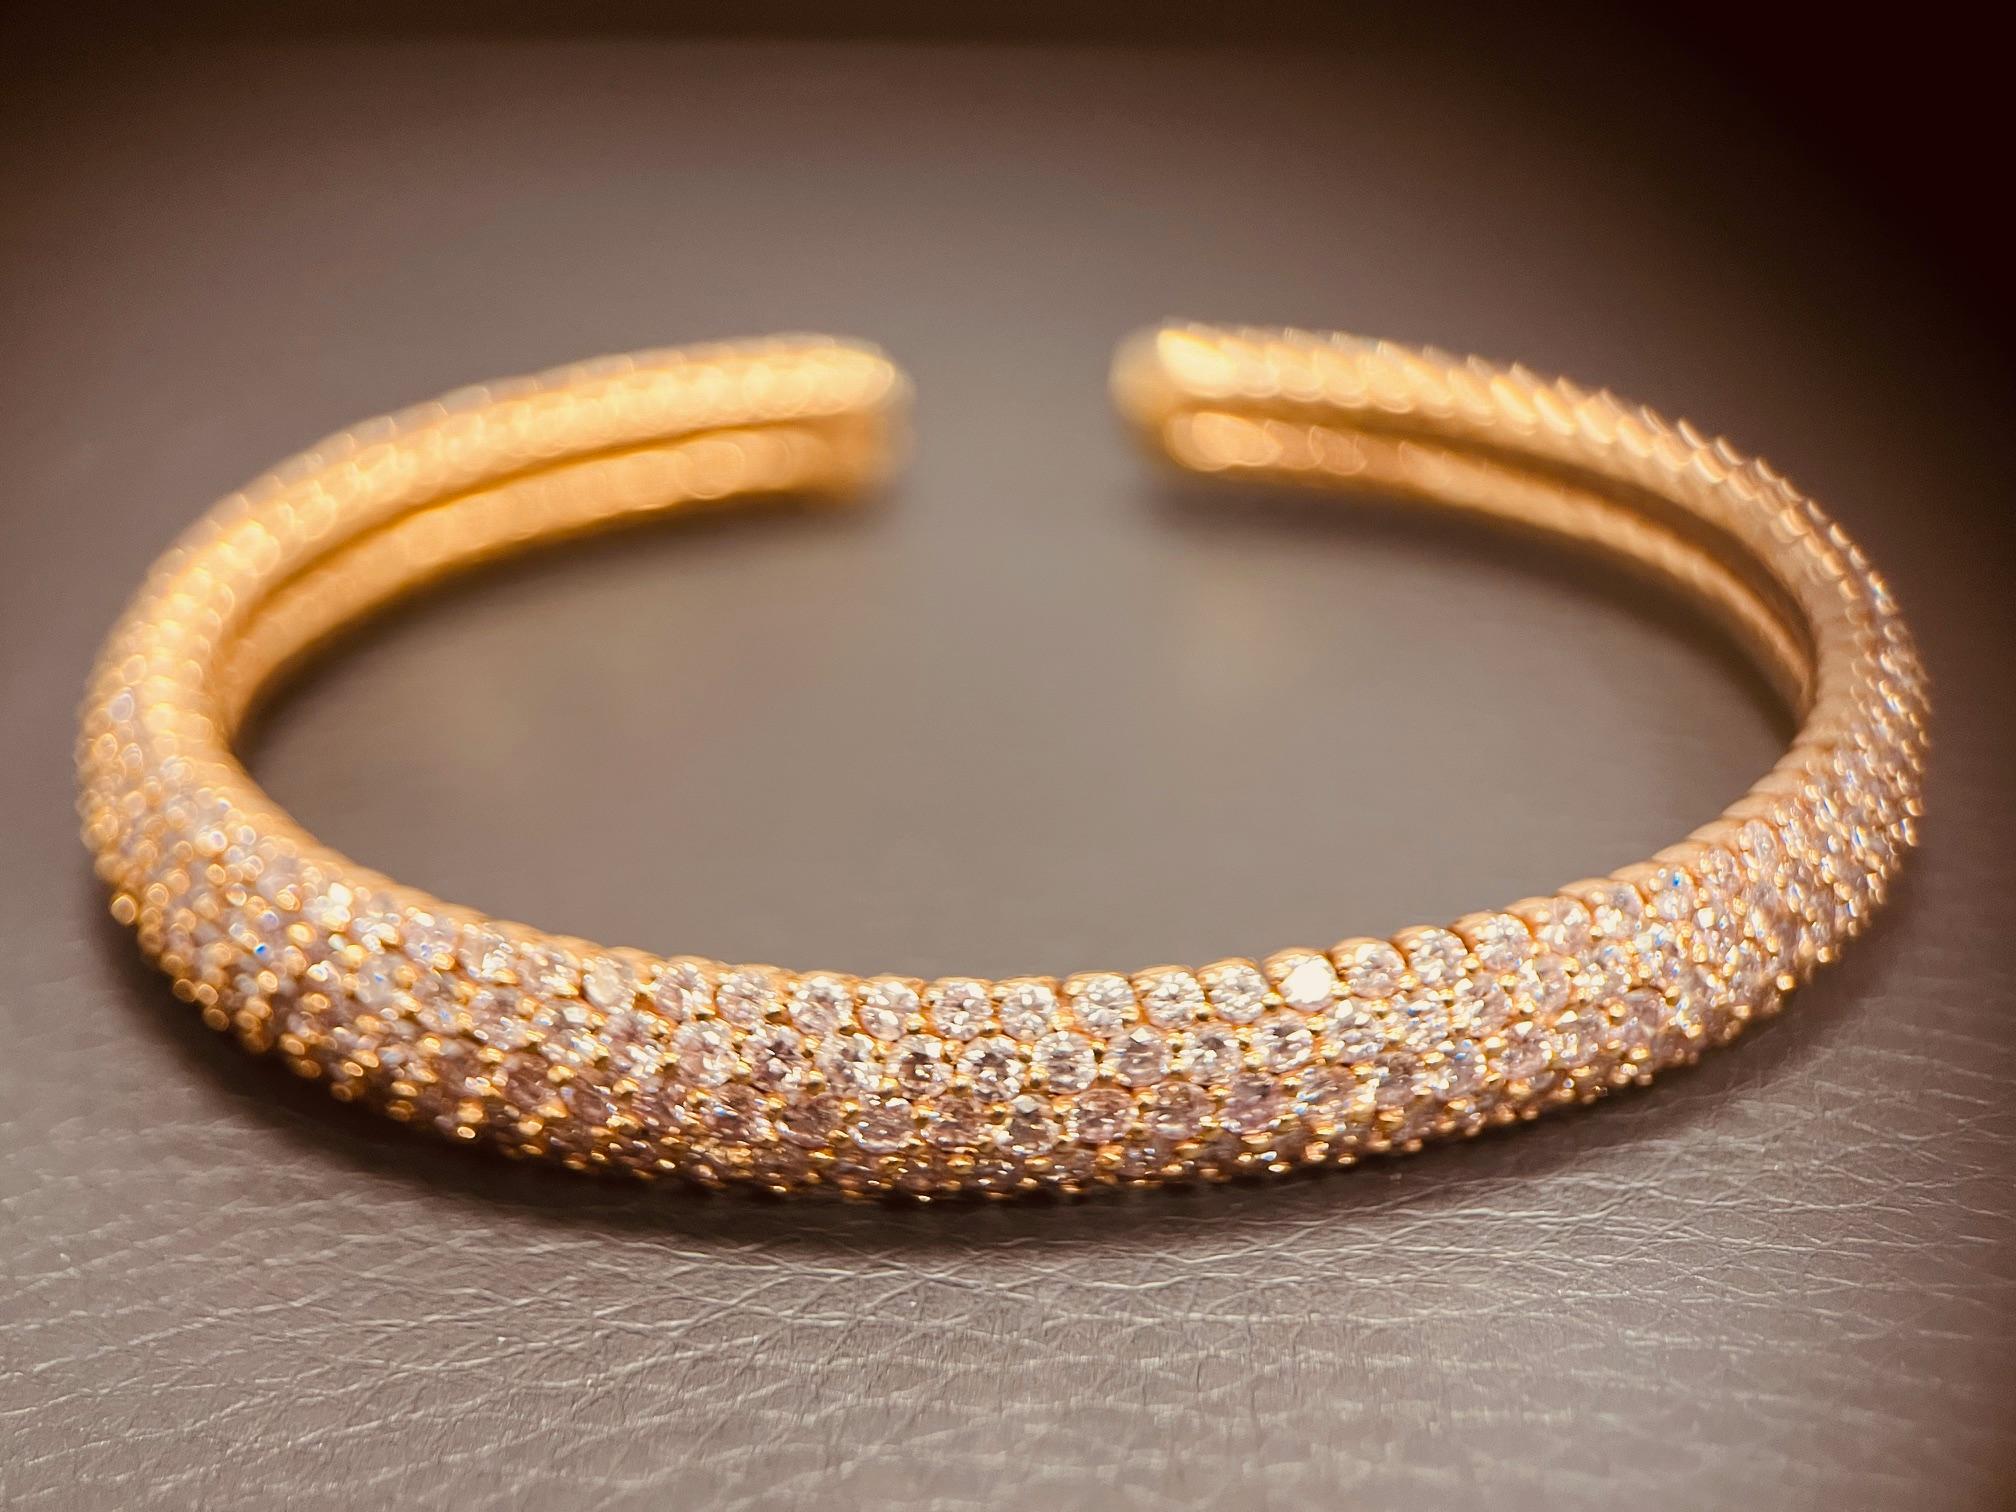 Bracelet en or rose 18ct serti de diamants roses fantaisie ; avec environ 12cts de diamants d'une teinte rose intense. Largeur du bracelet 9 mm. Circonférence externe : 5,7 mm. Circonférence interne : 5mm. Signé avakian
750 18K. Vers les années